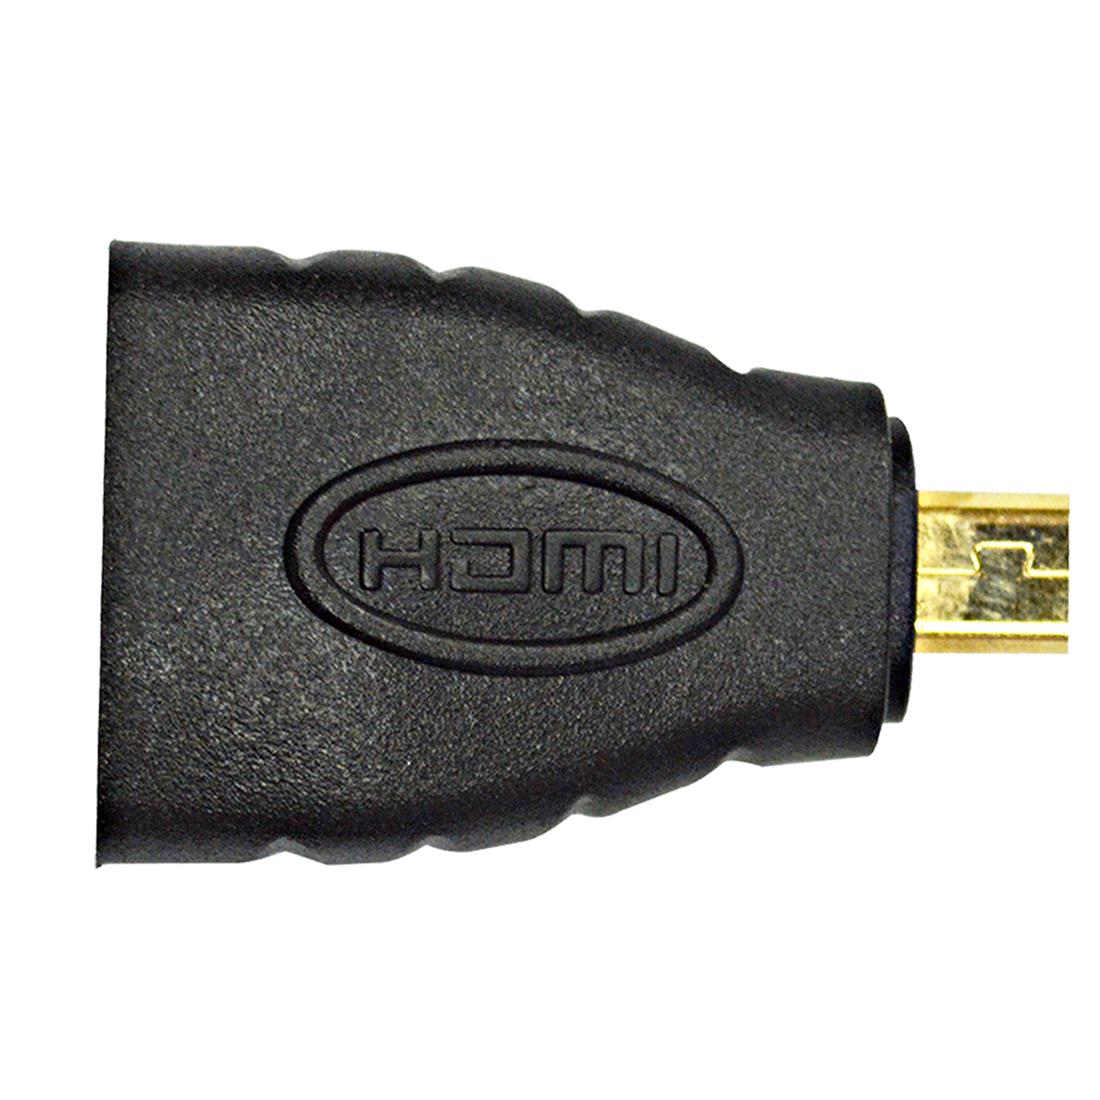 Acoplador HDMI (hembra - hembra) Tipo Acoplador Lineal H-H